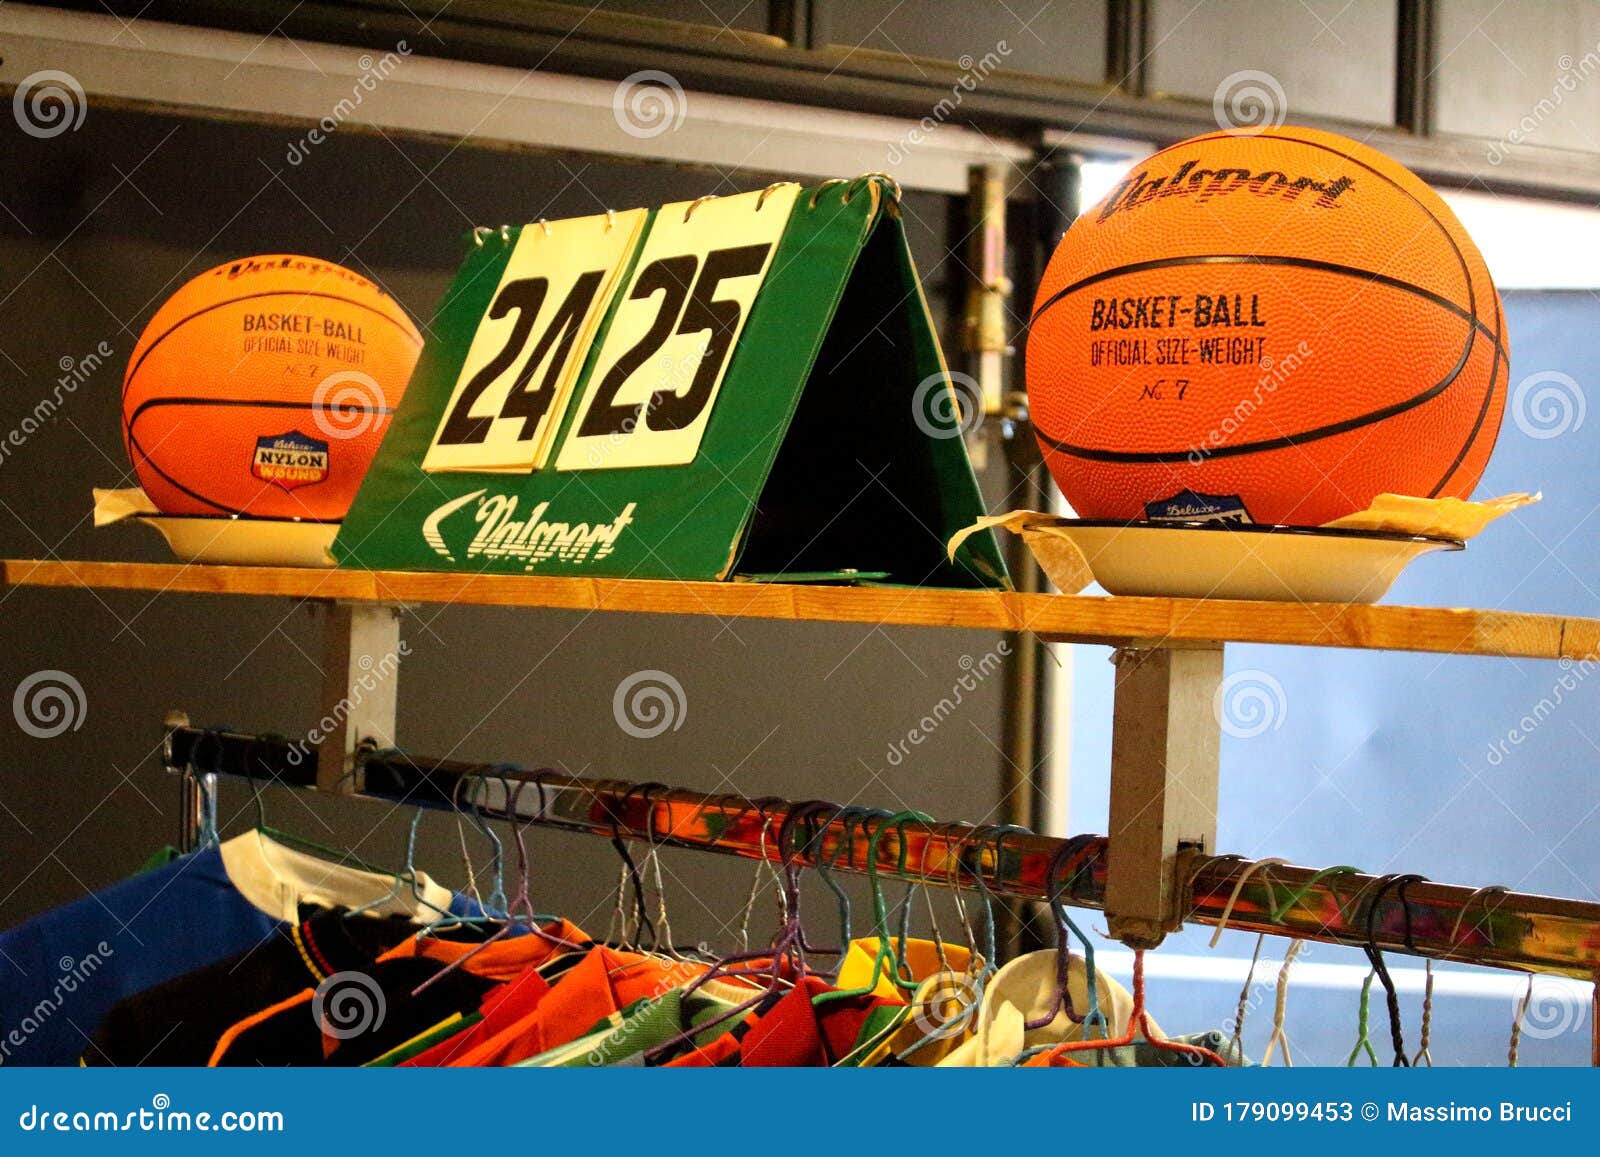 old basketballs and scoreboards at a vintage market